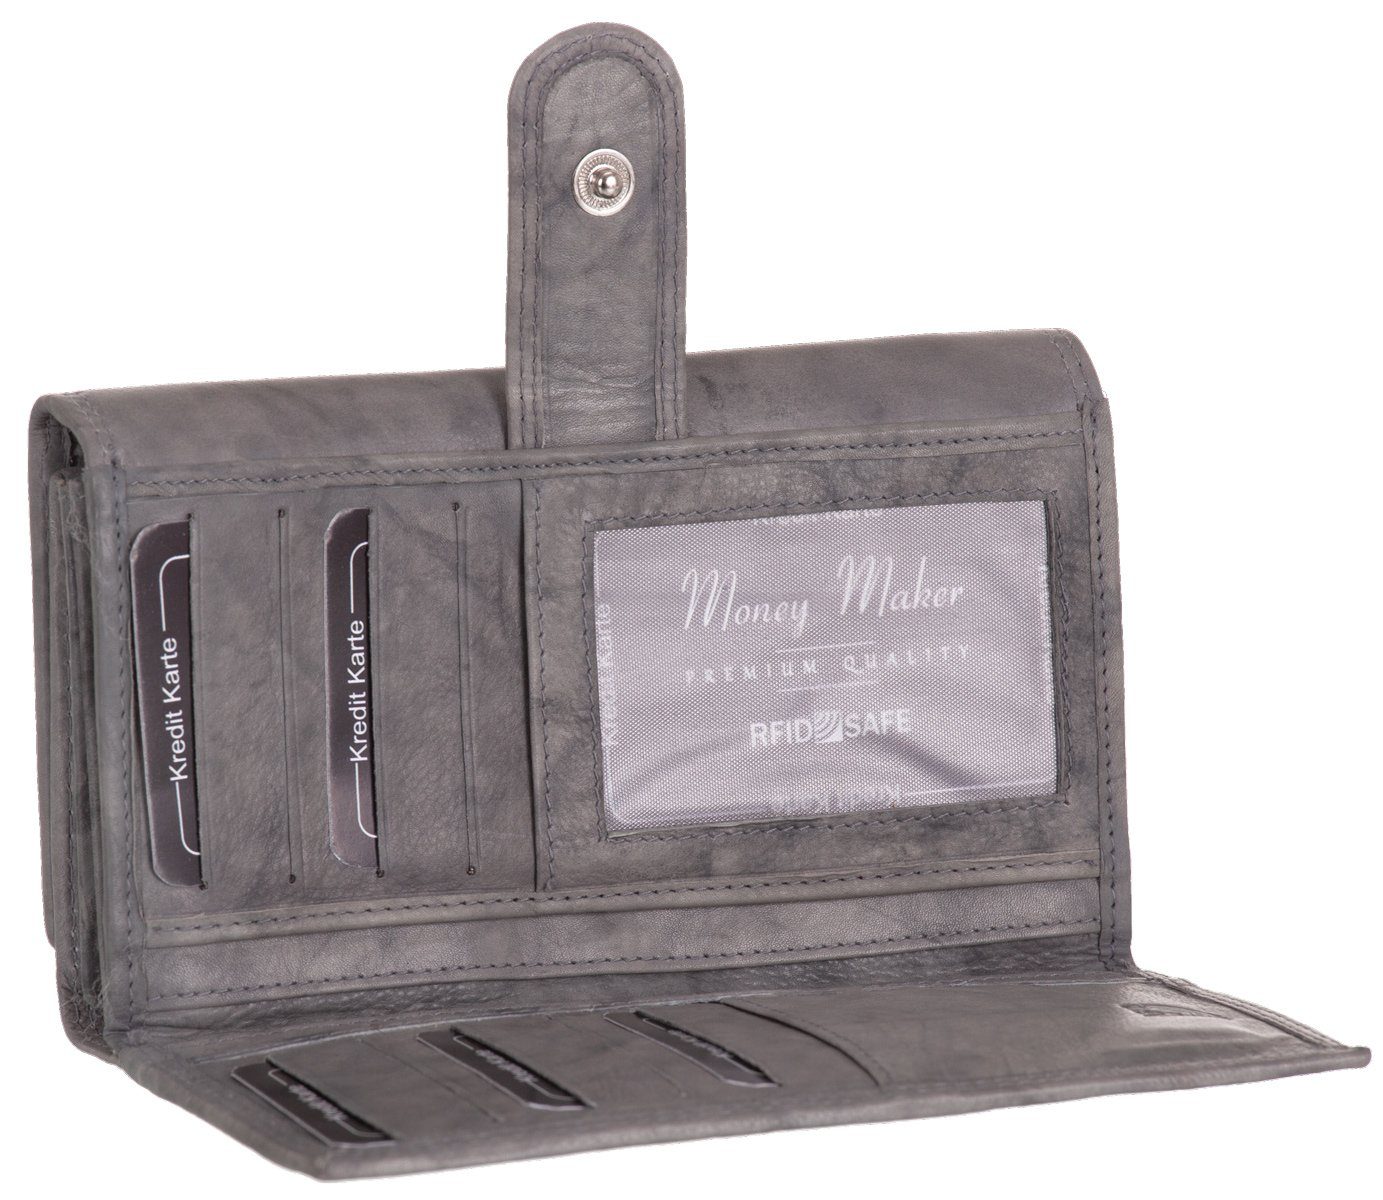 Damen Geldbörse Portemonnaie Maker grau 22 Money Steckplätze Sicherheitsfach Geldbeutel Geldbörse, Echt-Leder RFID